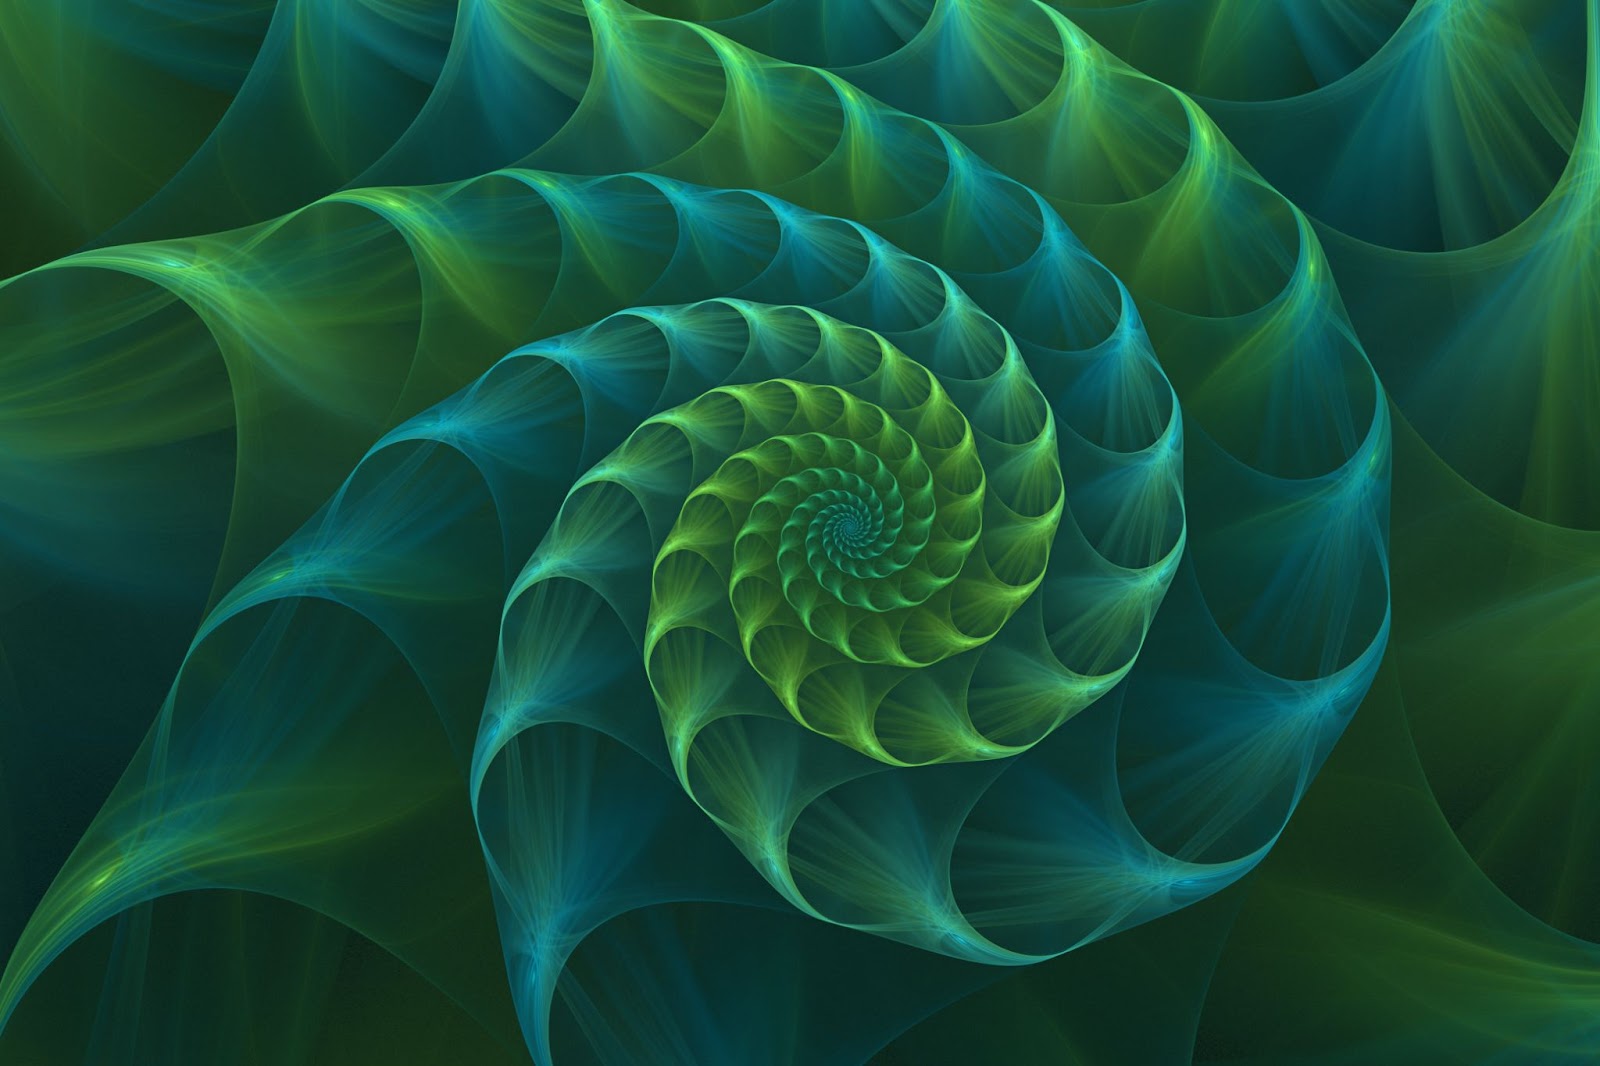 Image of a fractal.